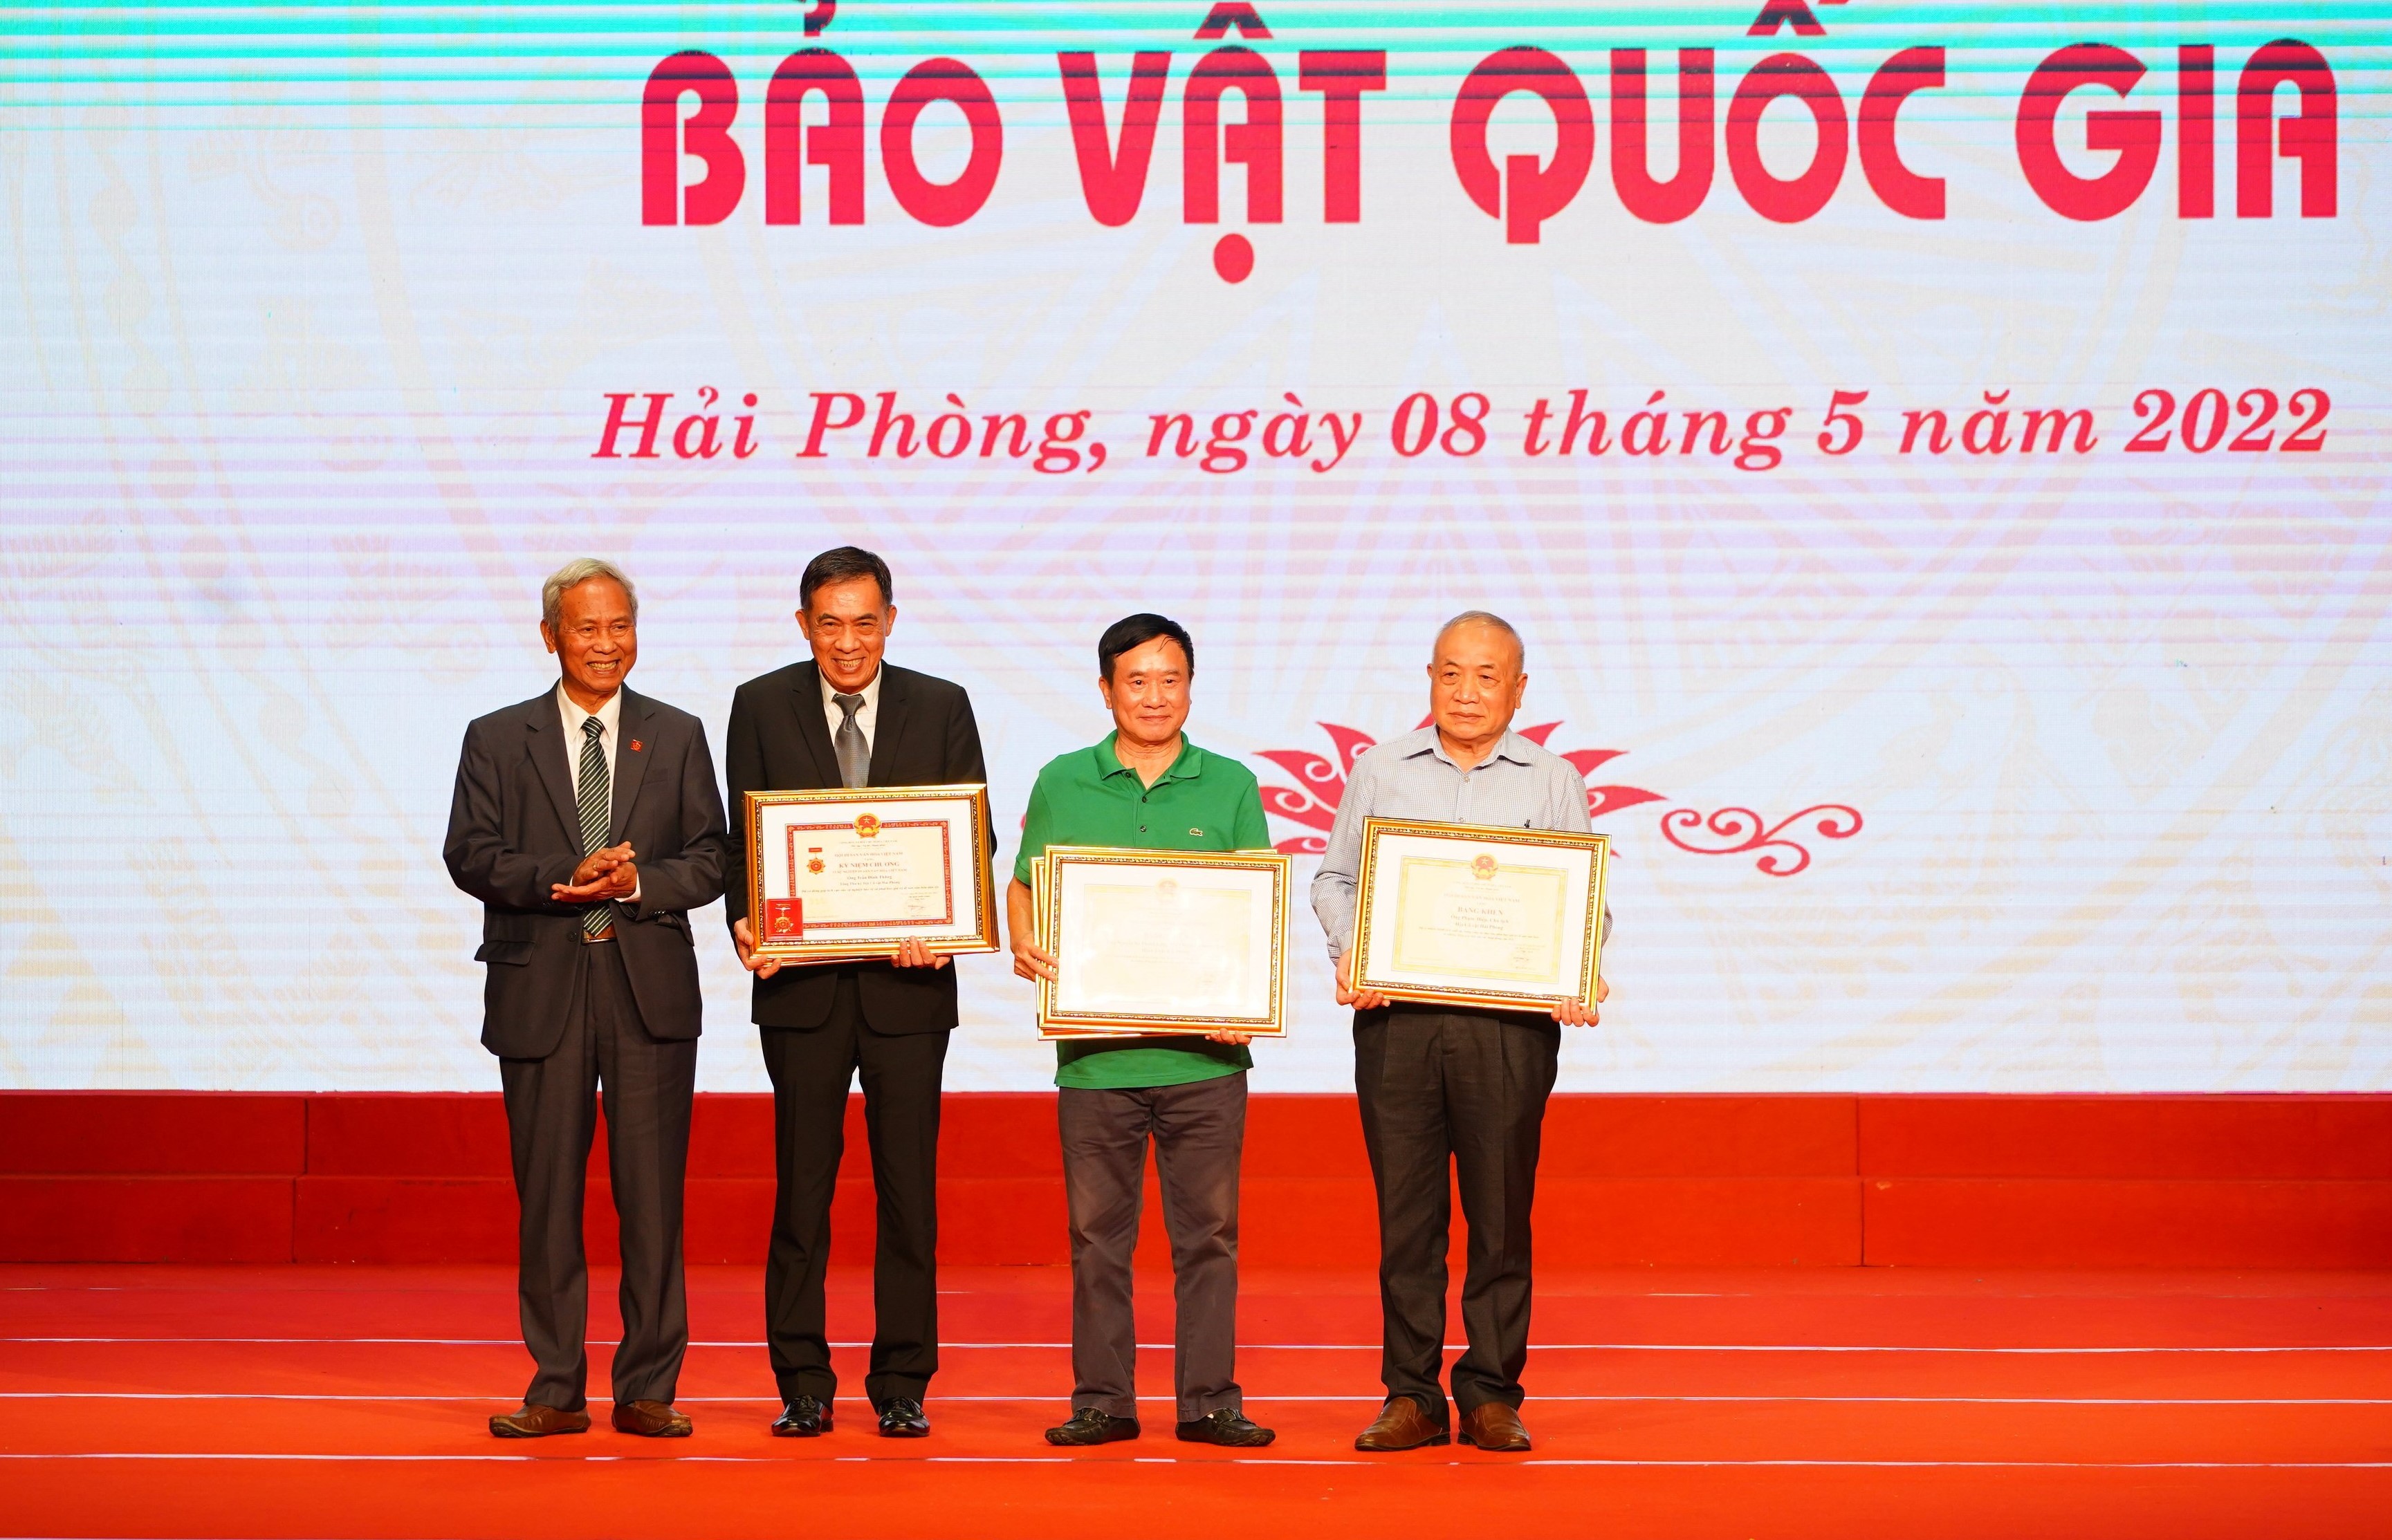 Hội Di sản Văn hóa Việt Nam tặng Bằng khen và Kỷ niệm chương cho các tập thể, cá nhân có thành tích trong việc giữ gìn các bảo vật Quốc gia.